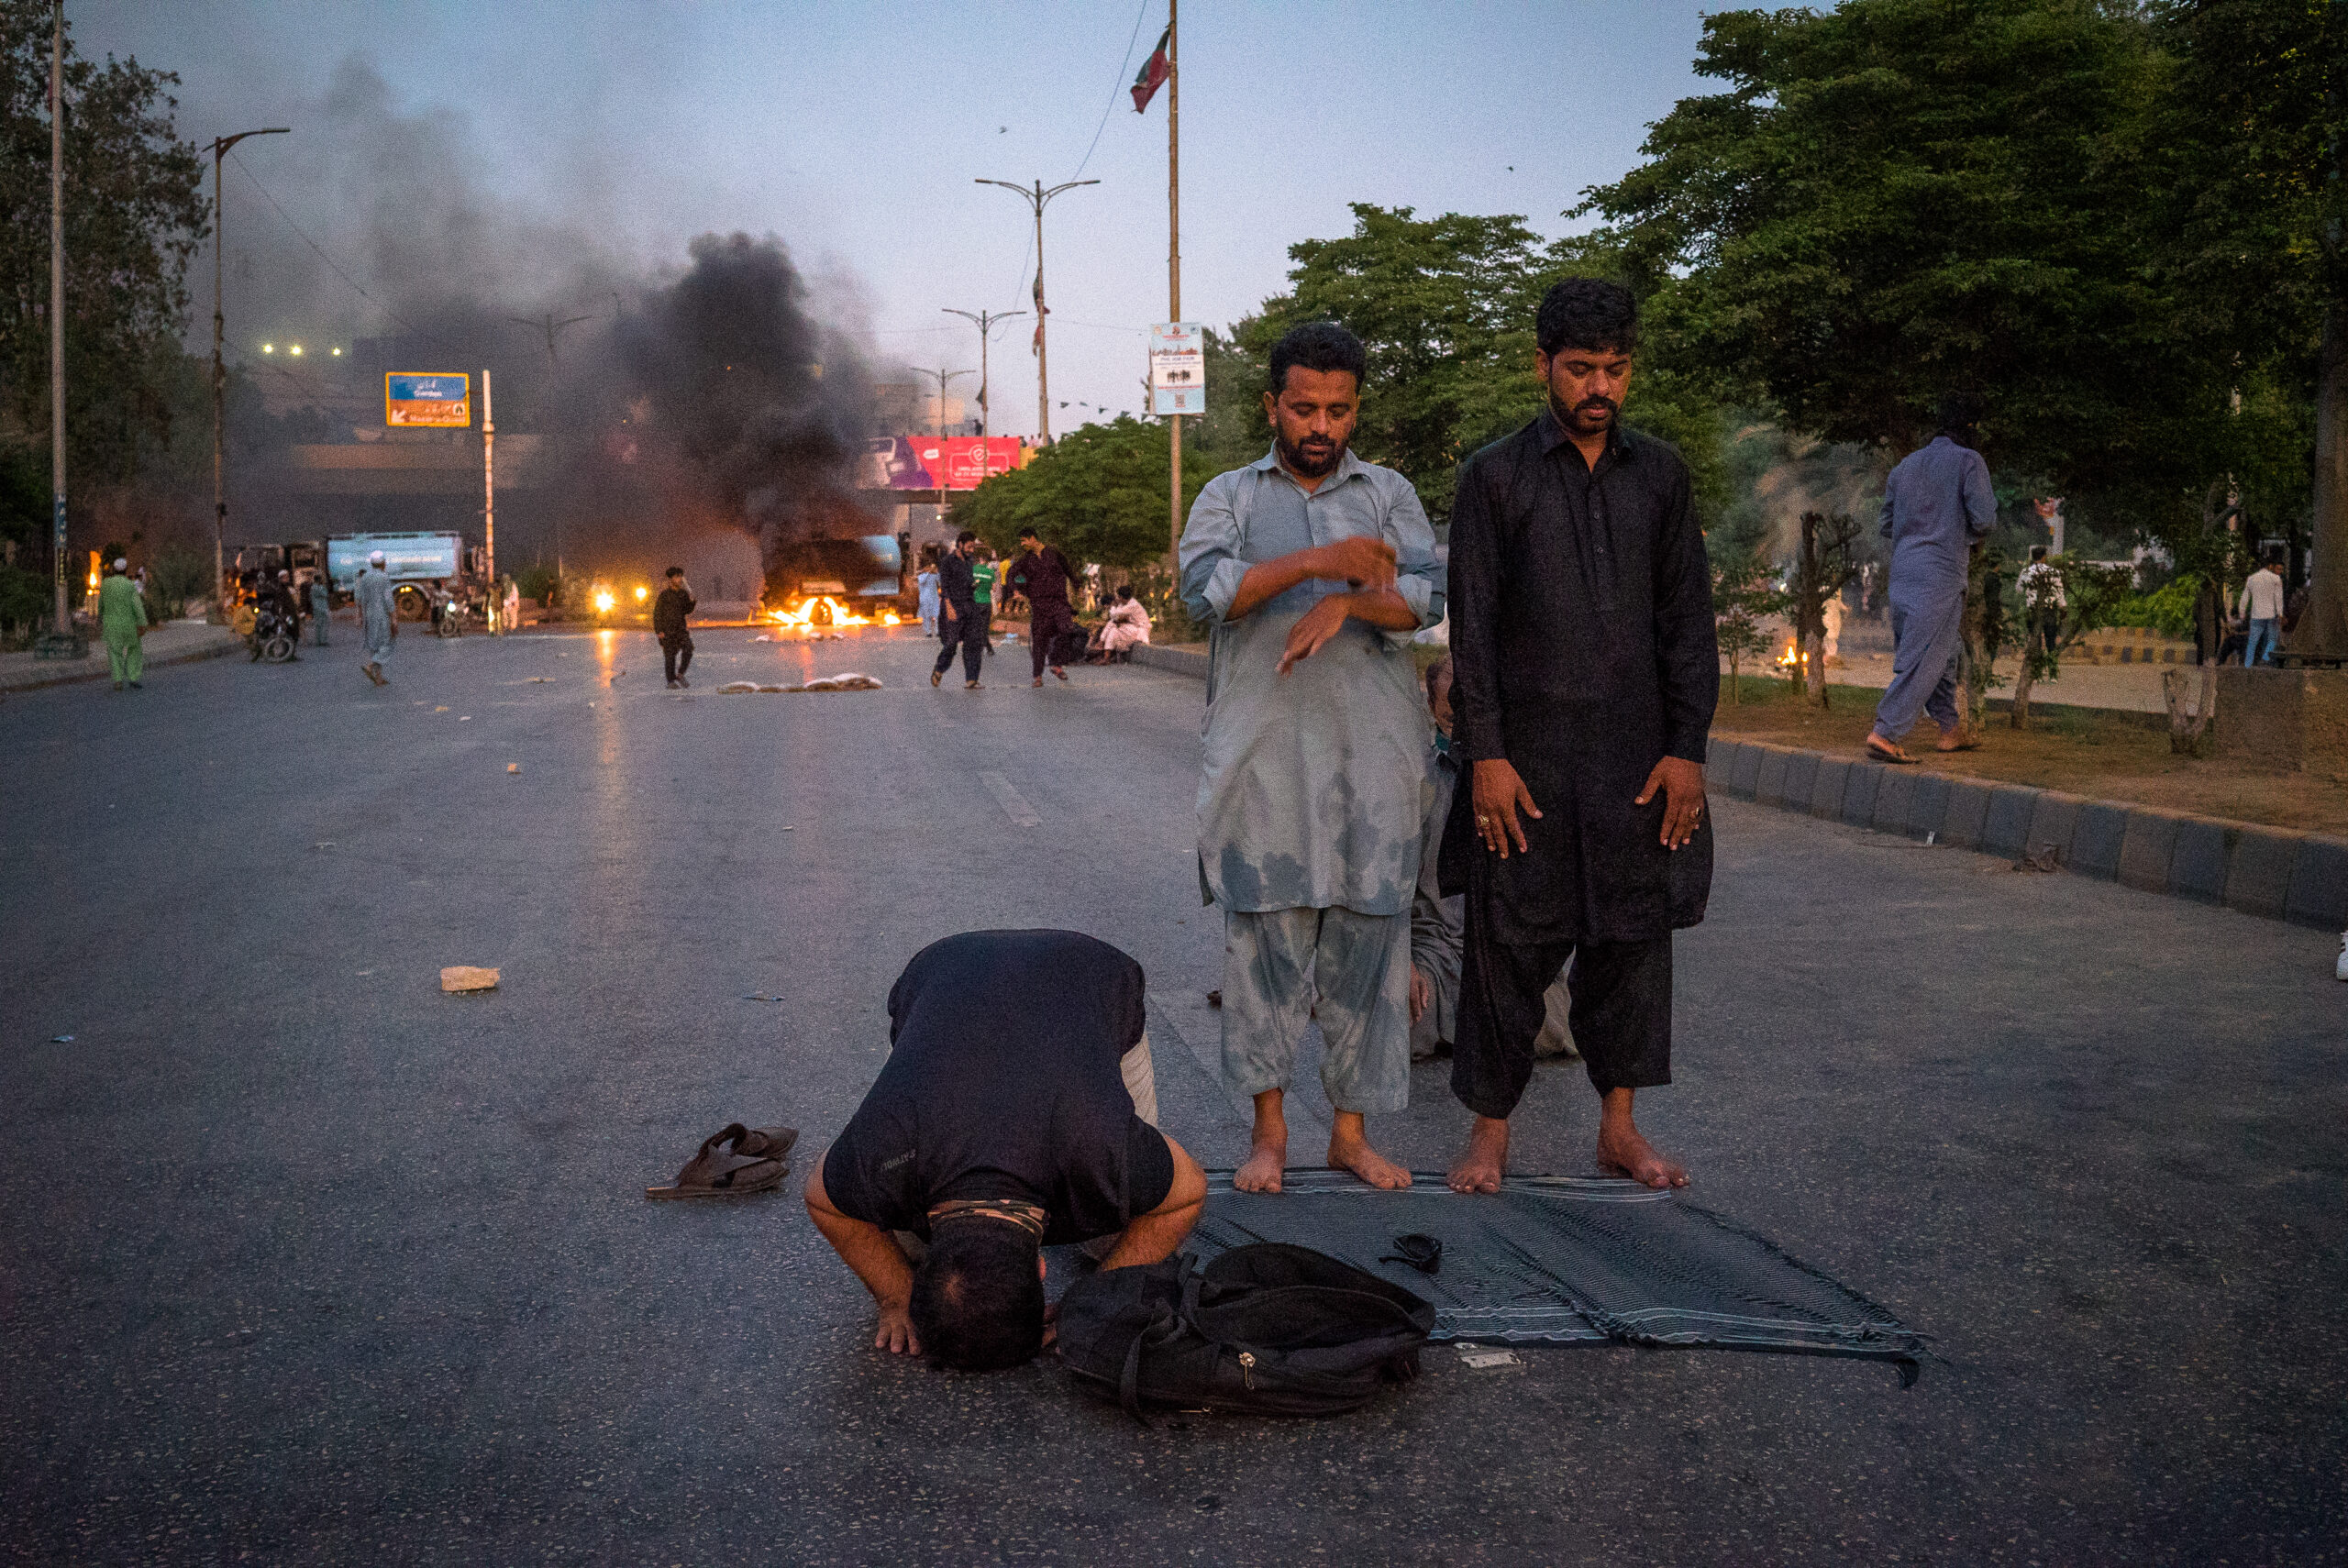 Partidarios del PTI rezan entre dos ráfagas de gas lacrimógeno. © Laurent Gayer